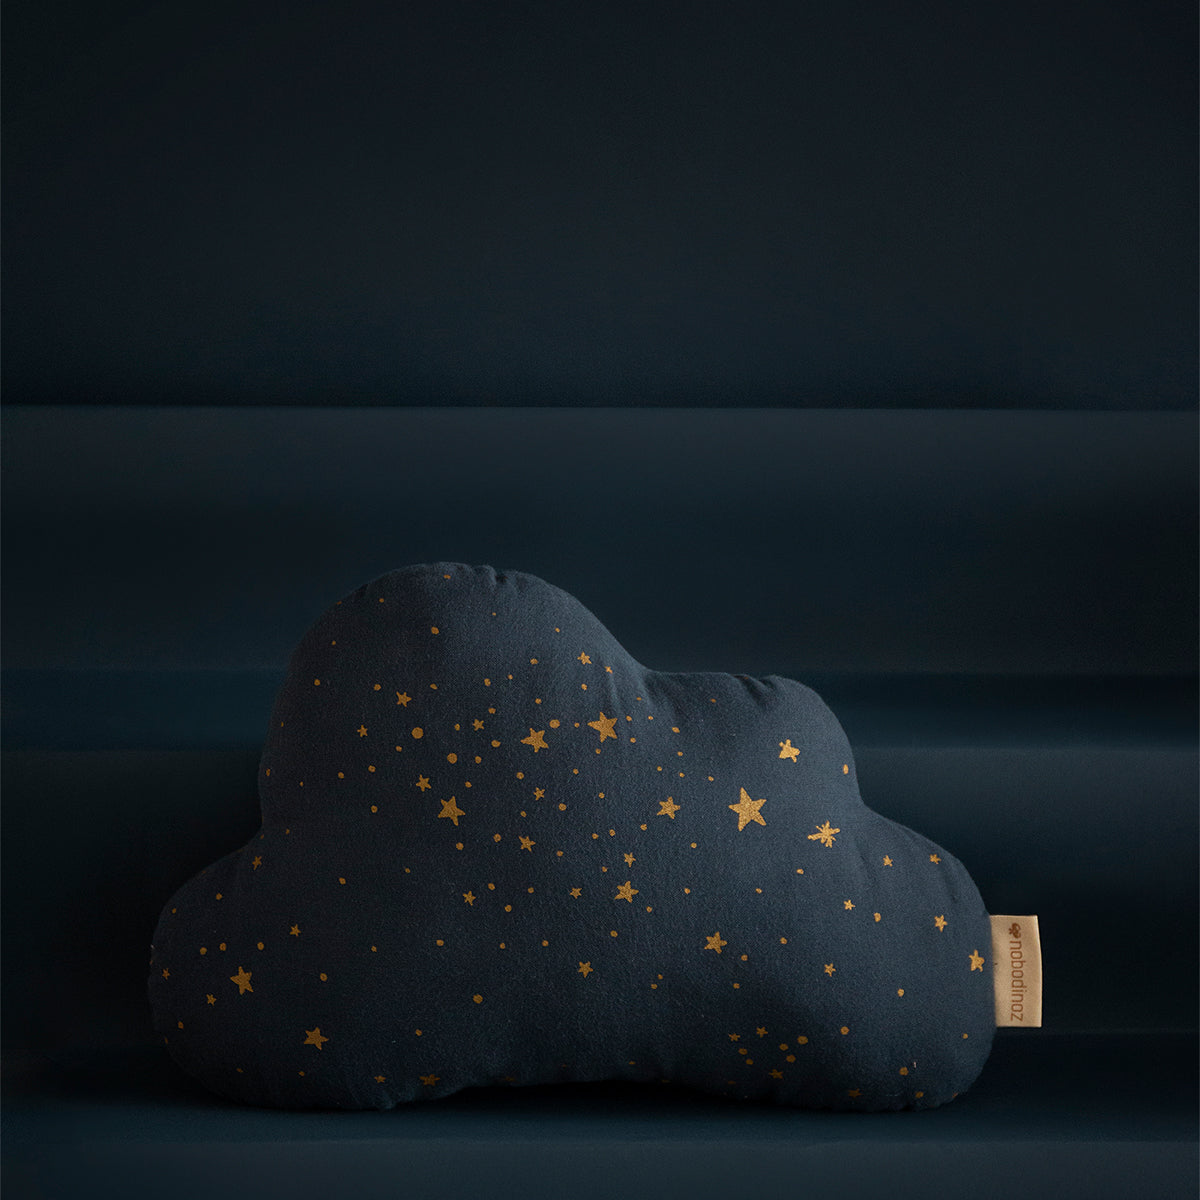 Dit schattige wolk kussen van Nobodinoz in de kleur gold stella night blue maakt elke kinderkamer wat dromeriger. Het sierkussen is heerlijk zacht eis gemaakt van biologisch katoen. VanZus